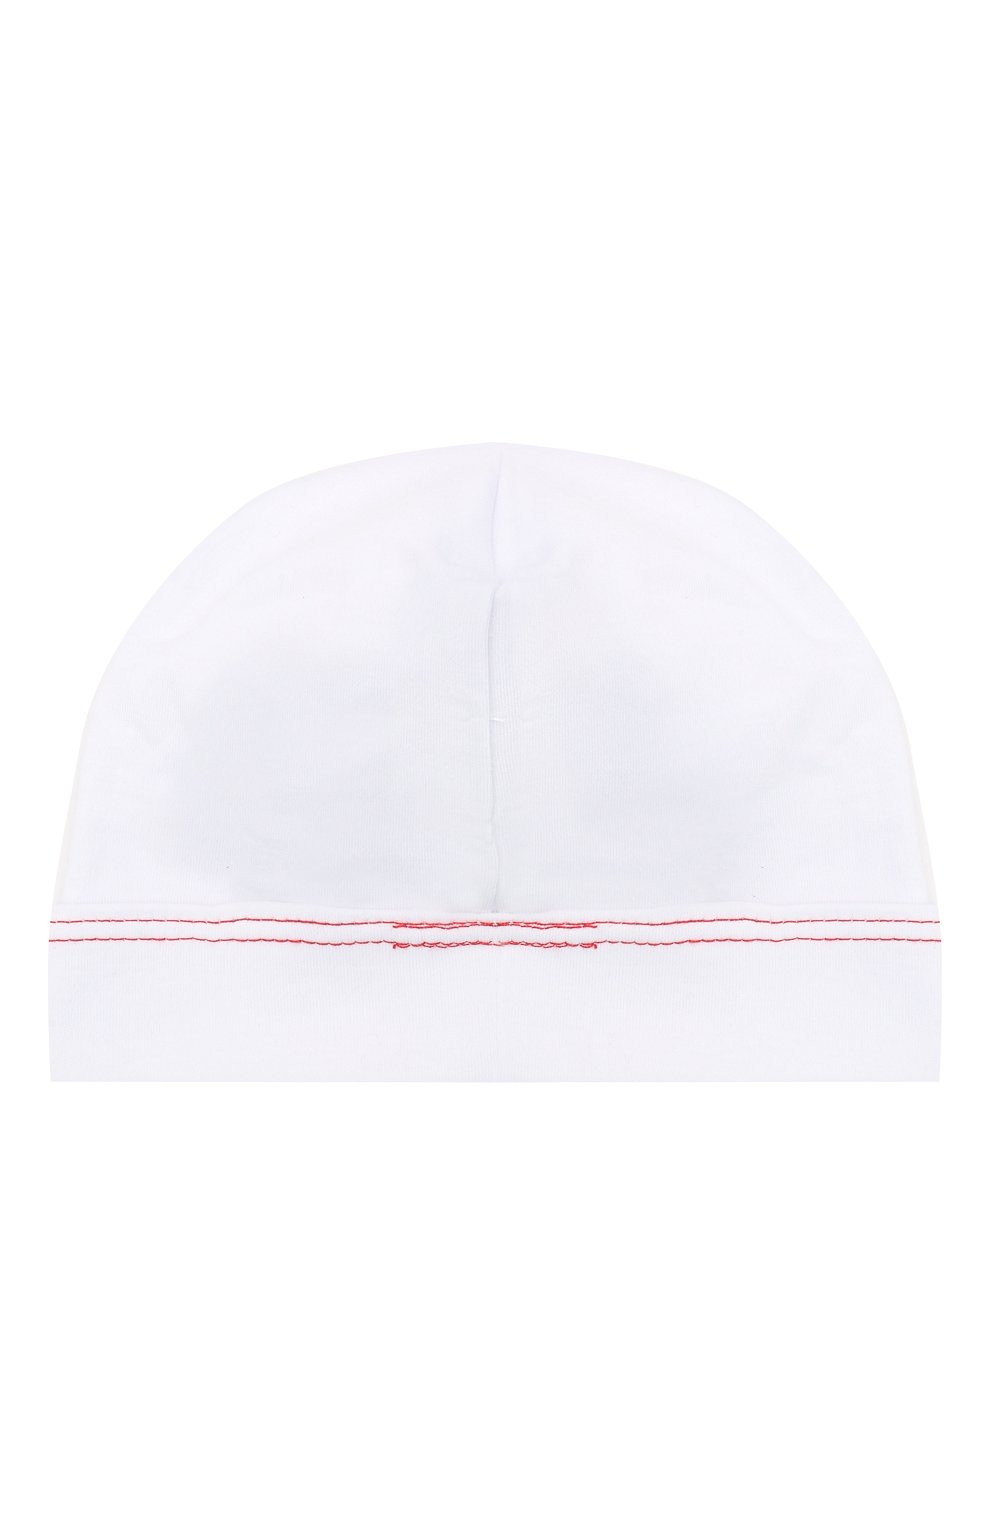 Детского хлопковая шапка MAGNOLIA BABY белого цвета, арт. 969-50B-WHRD | Фото 2 (Материал: Текстиль, Хлопок)